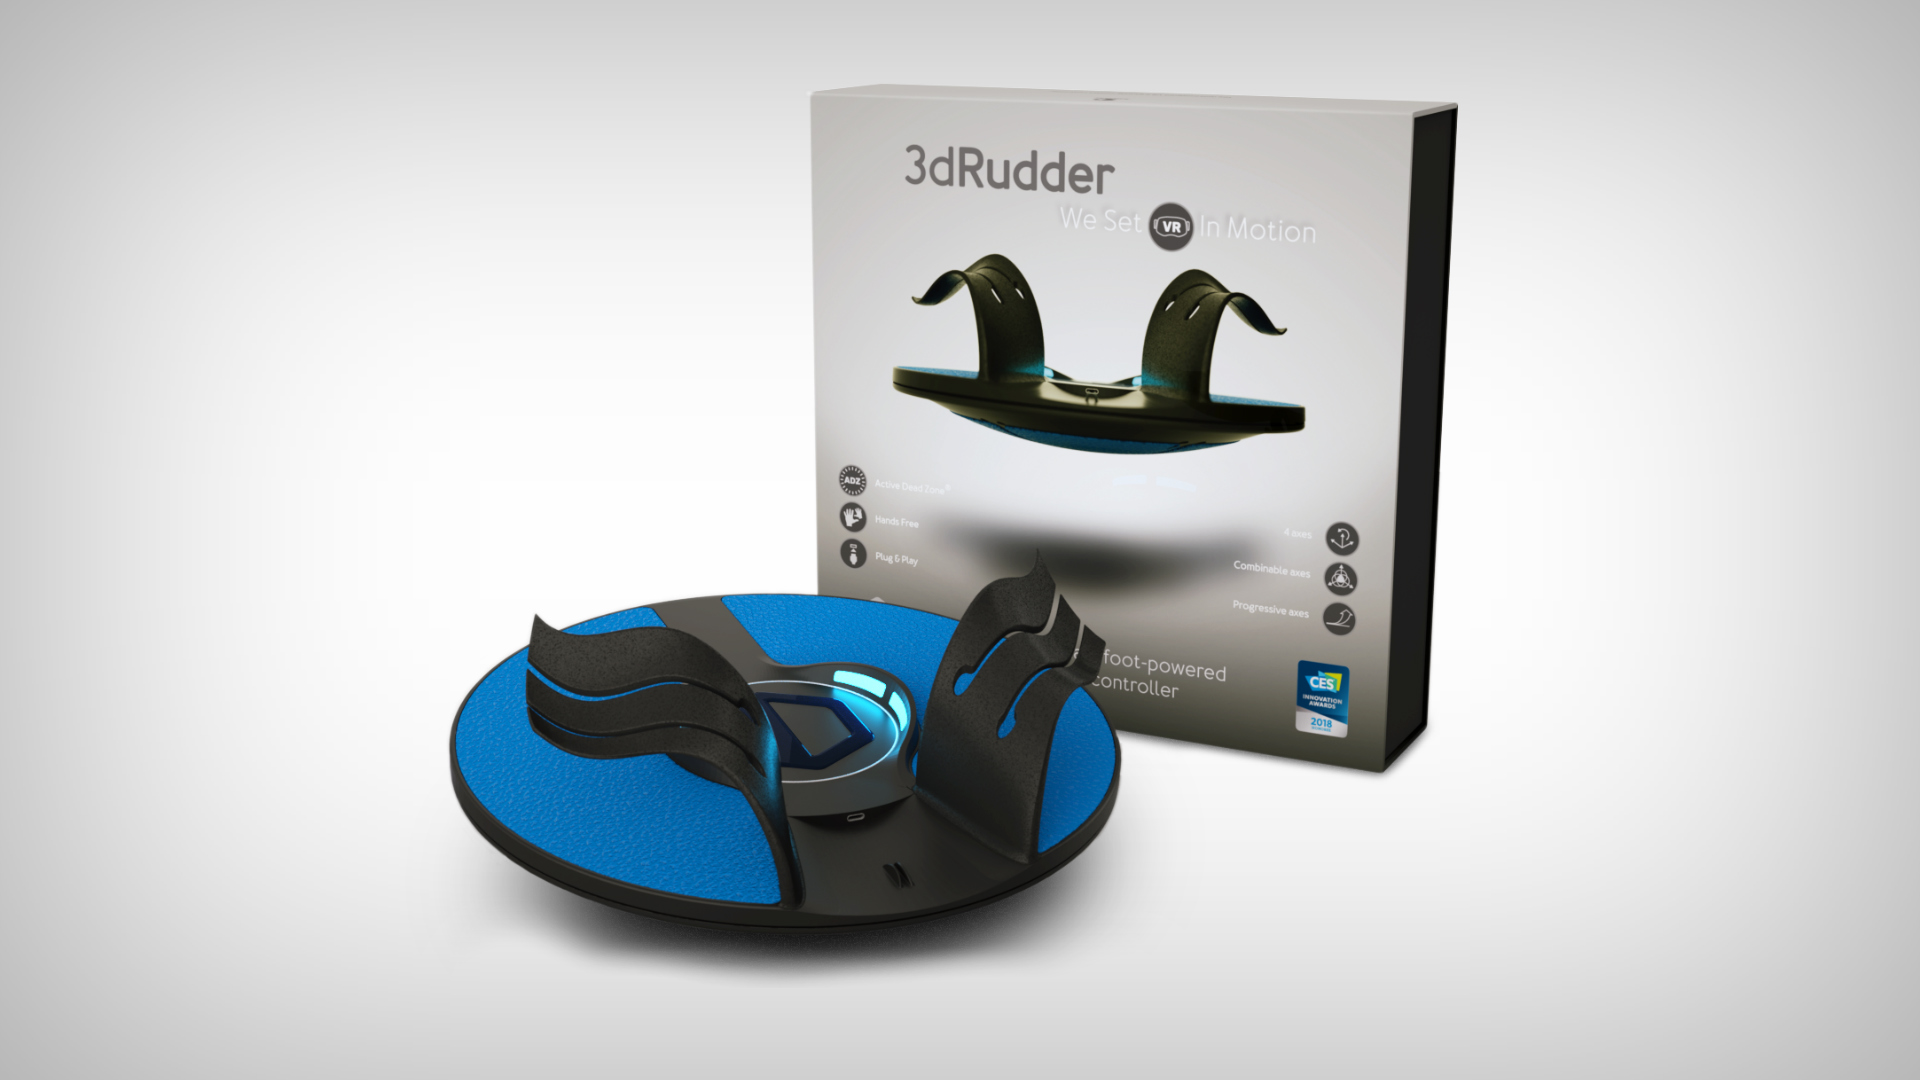 3drudder foot motion controller